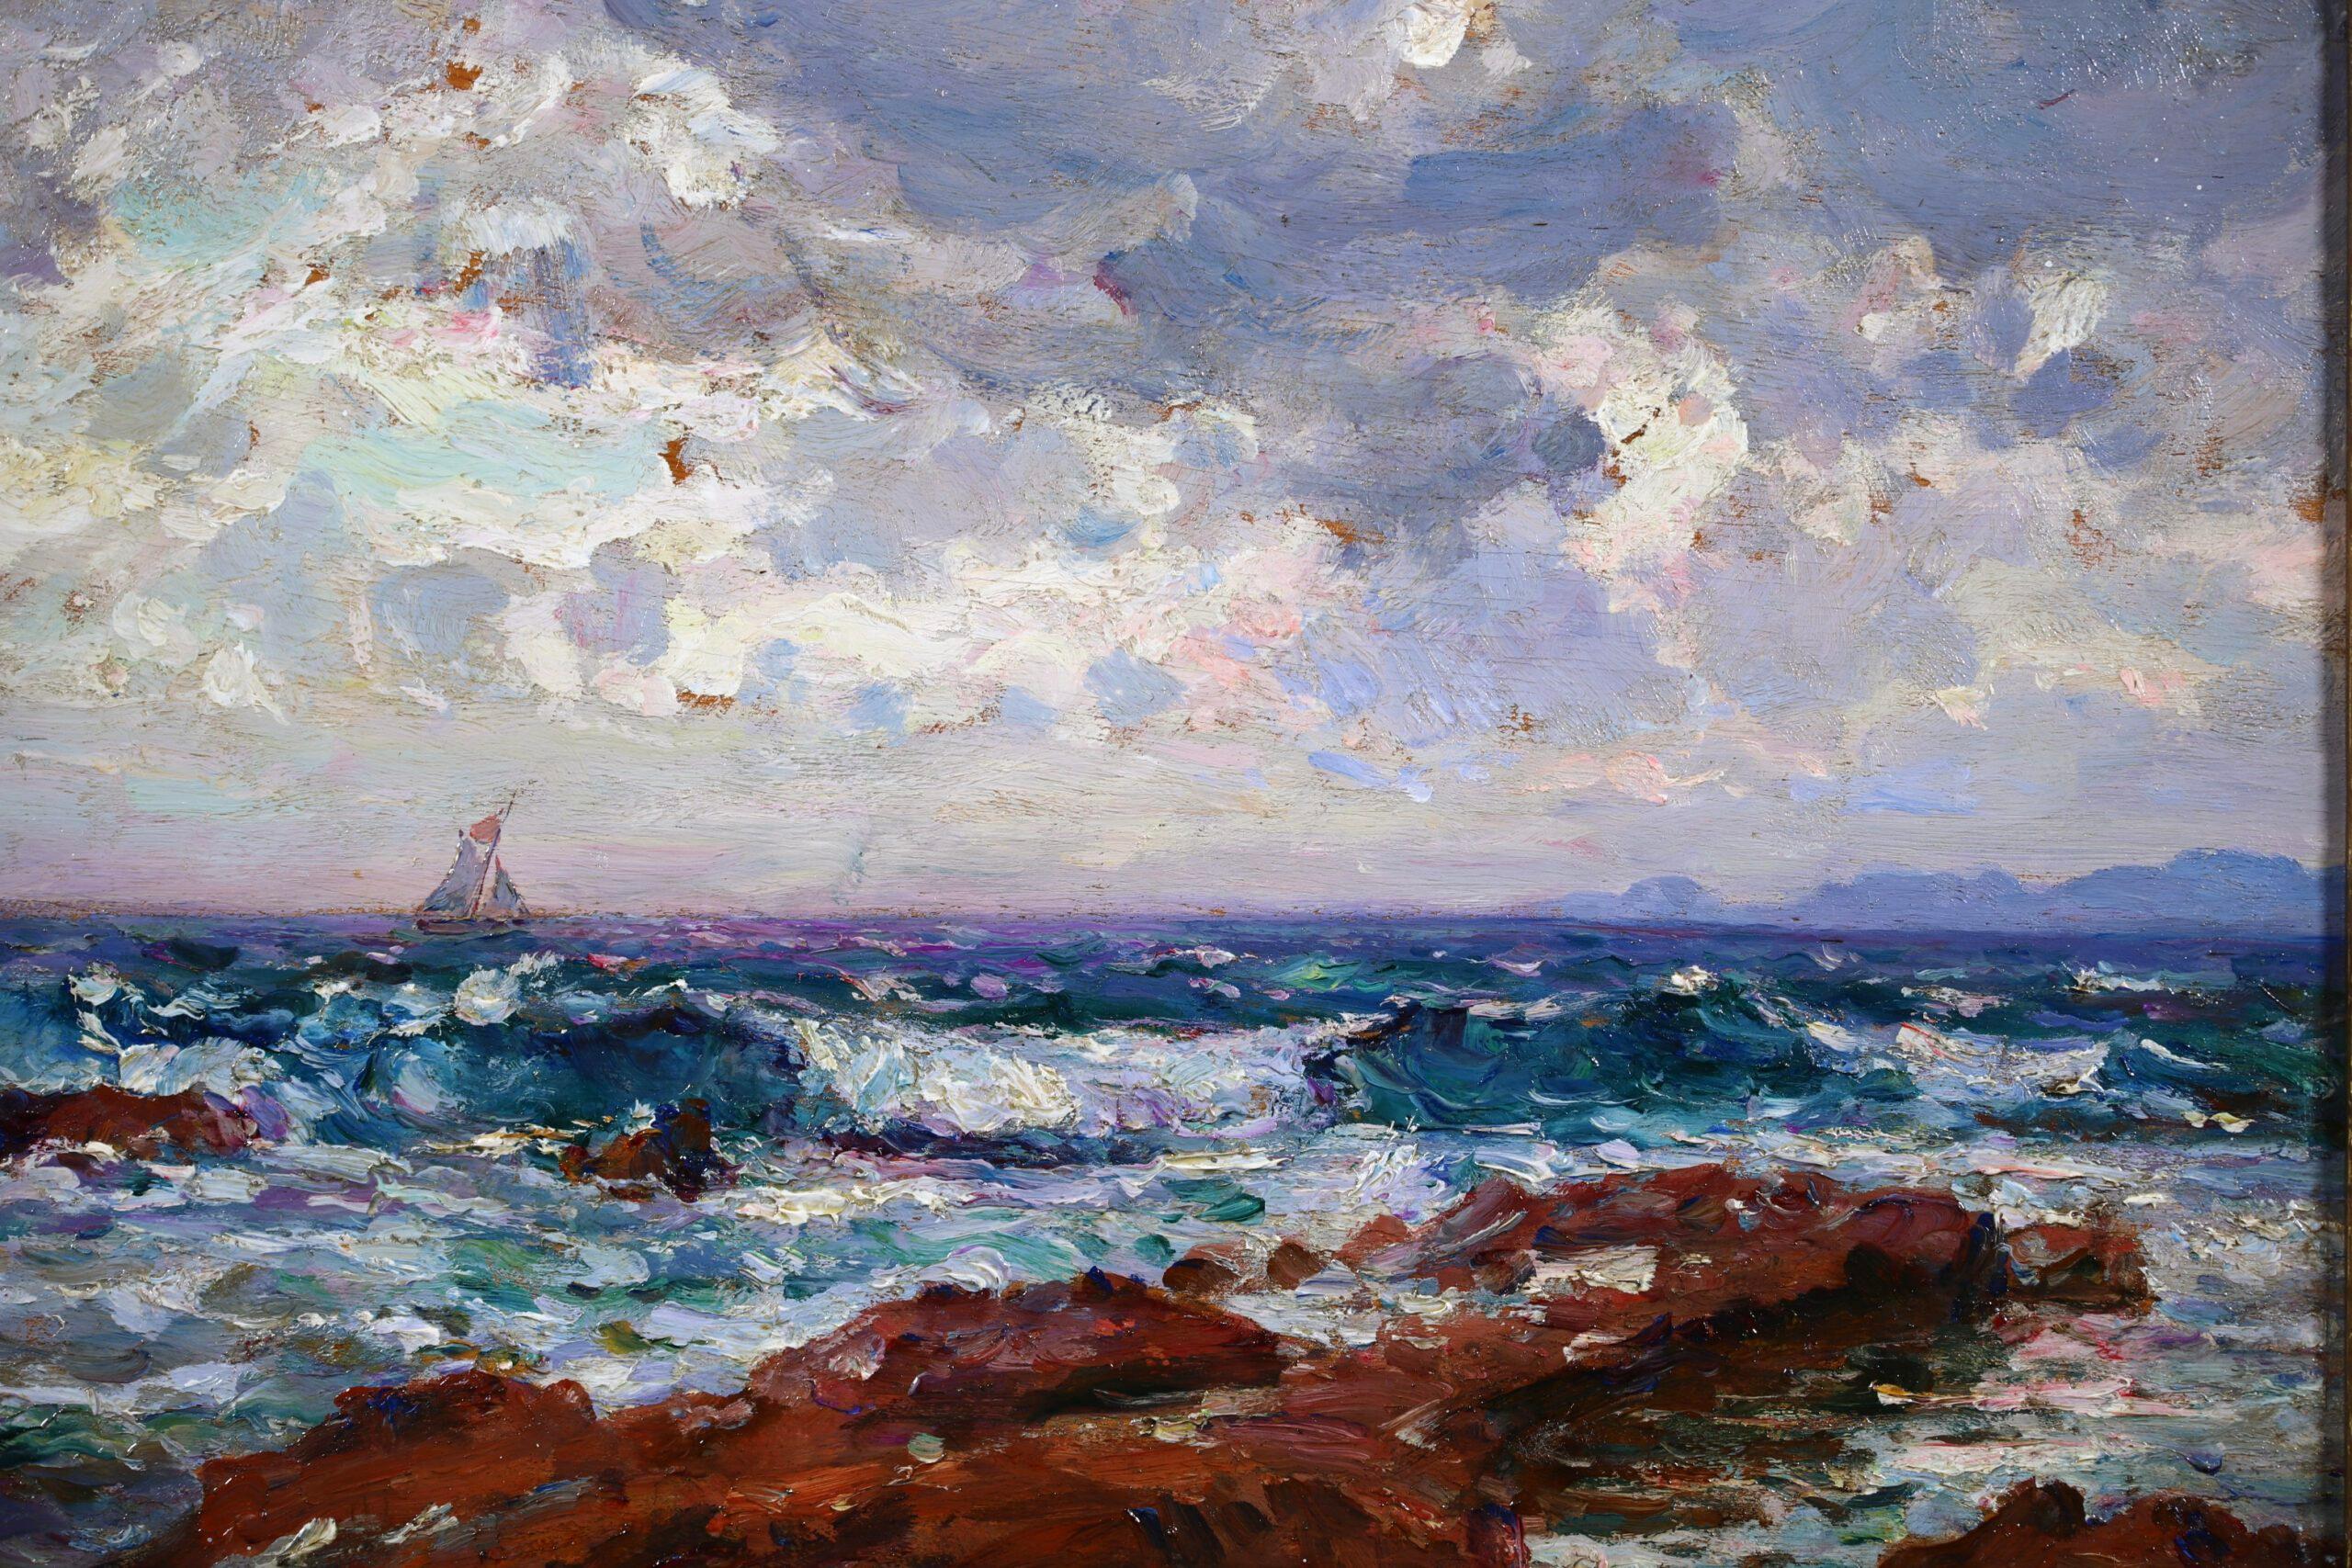 Signierte Öl auf Panel Seelandschaft circa 1920 von Französisch post impressionistischen Maler Adolphe Louis Gaussen. Das Werk zeigt einen Blick auf Wellen, die gegen eine felsige Küste schlagen. Ein Segelboot segelt unter bewölktem